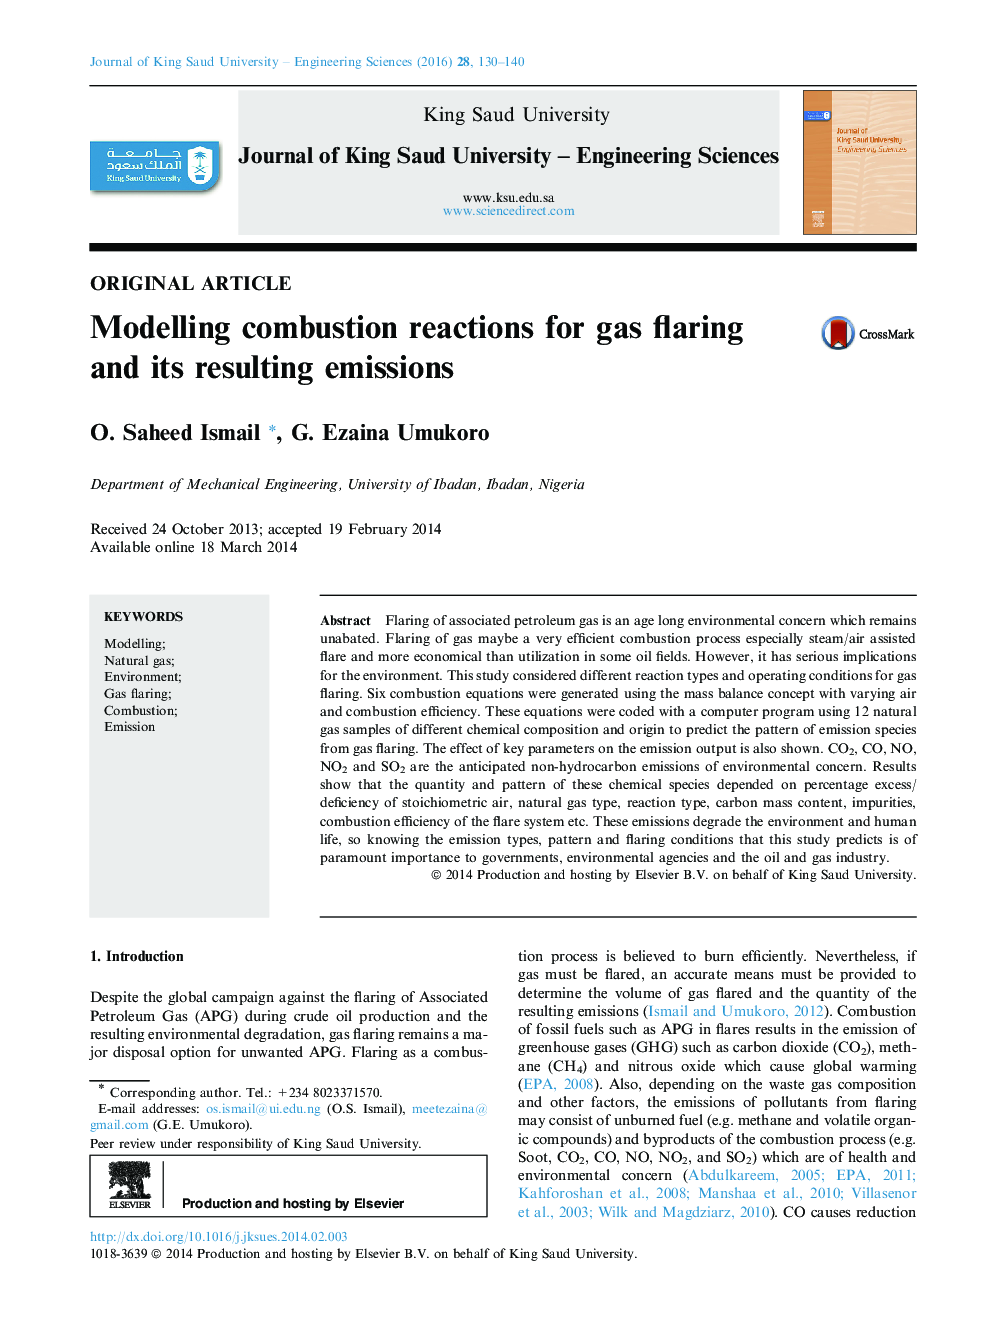 مدل سازی واکنش احتراق برای گازهای گلخانه ای و انتشار گازهای حاصل از آن 